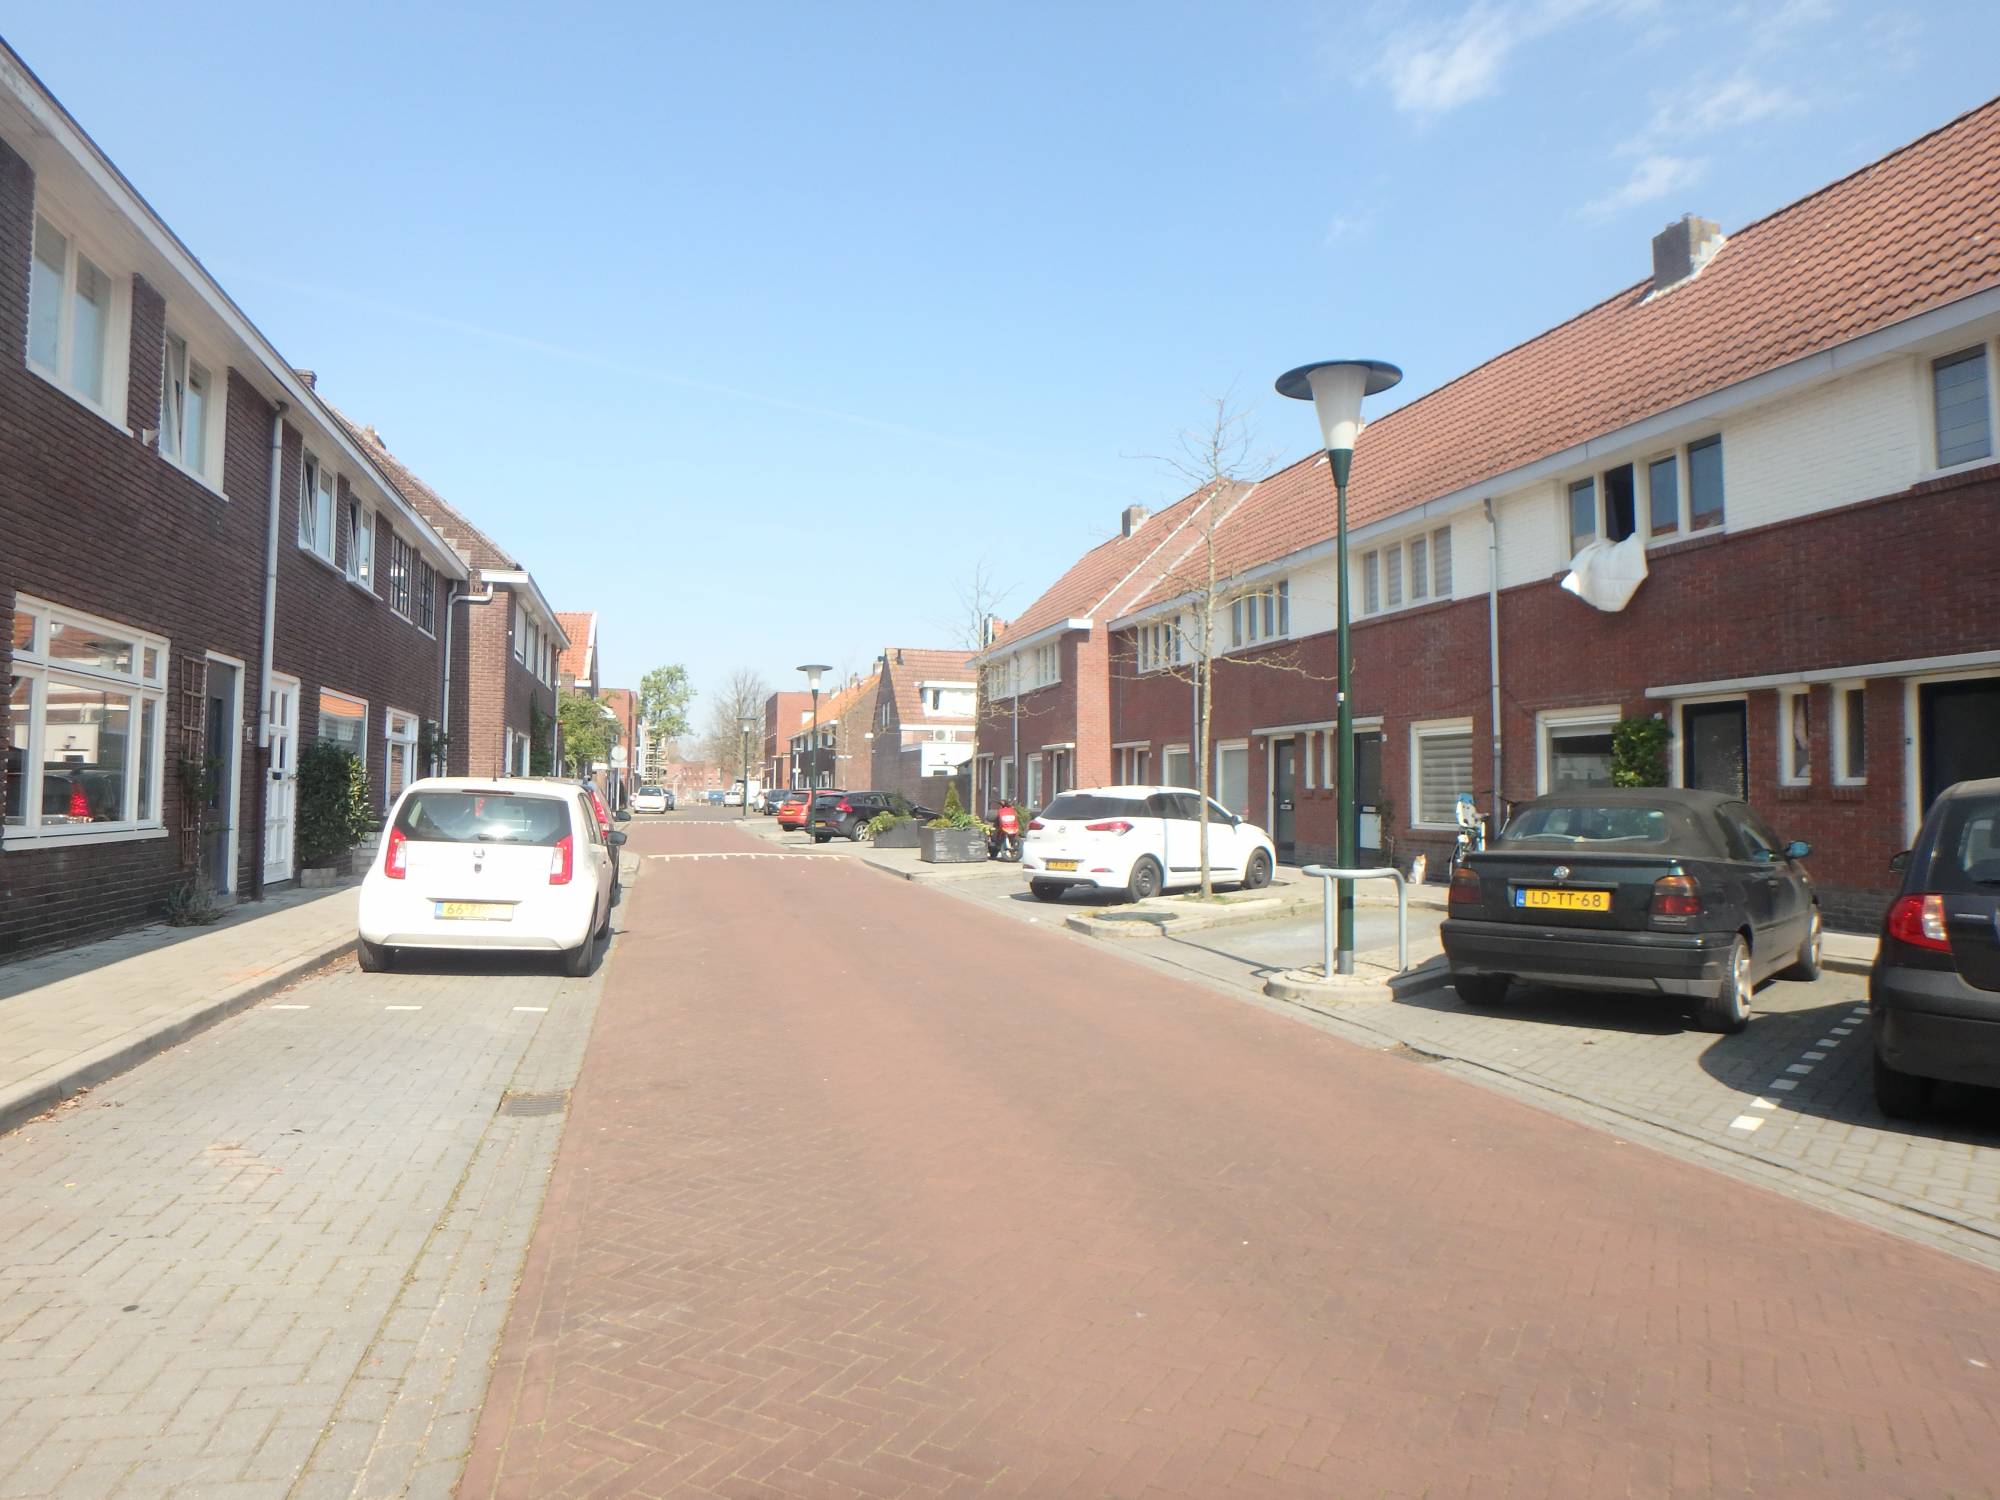 Bekijk for 1/11 van apartment in Eindhoven